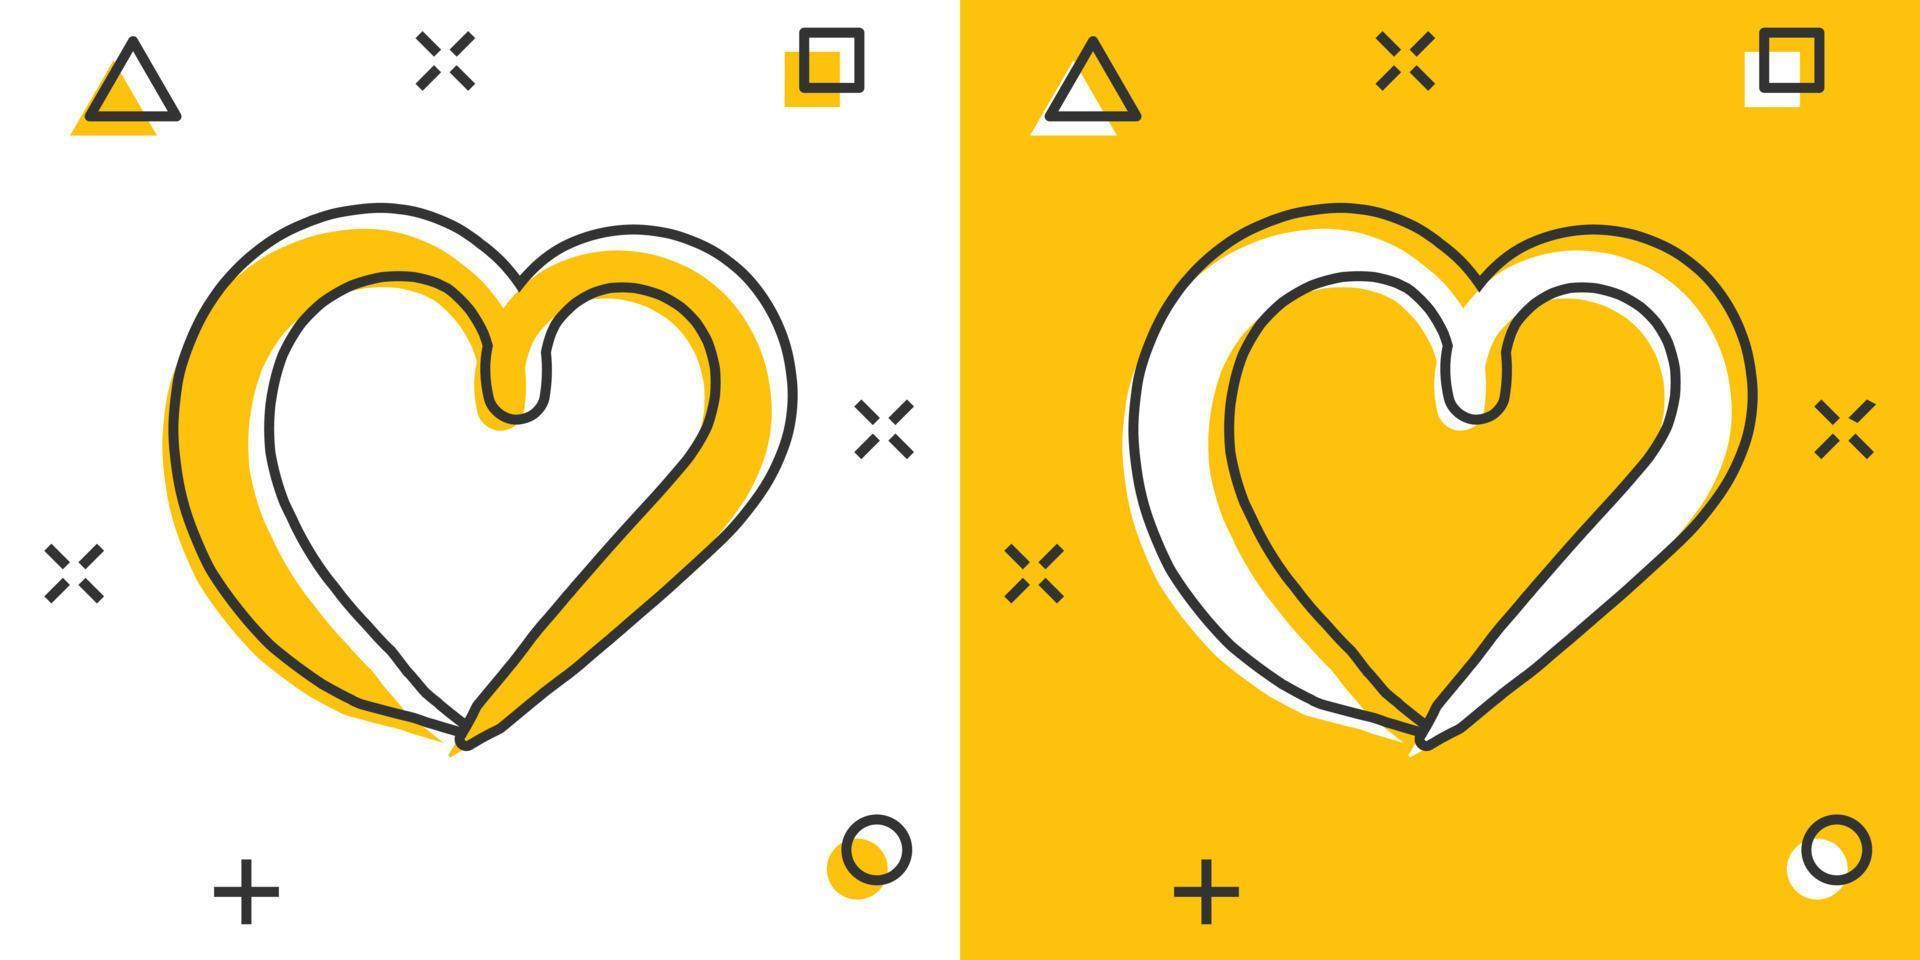 Vektor Cartoon Hand gezeichnete Herz-Symbol im Comic-Stil. Liebesskizzen-Gekritzelherz-Illustrationspiktogramm. handgezeichnetes valentine business splash effektkonzept.